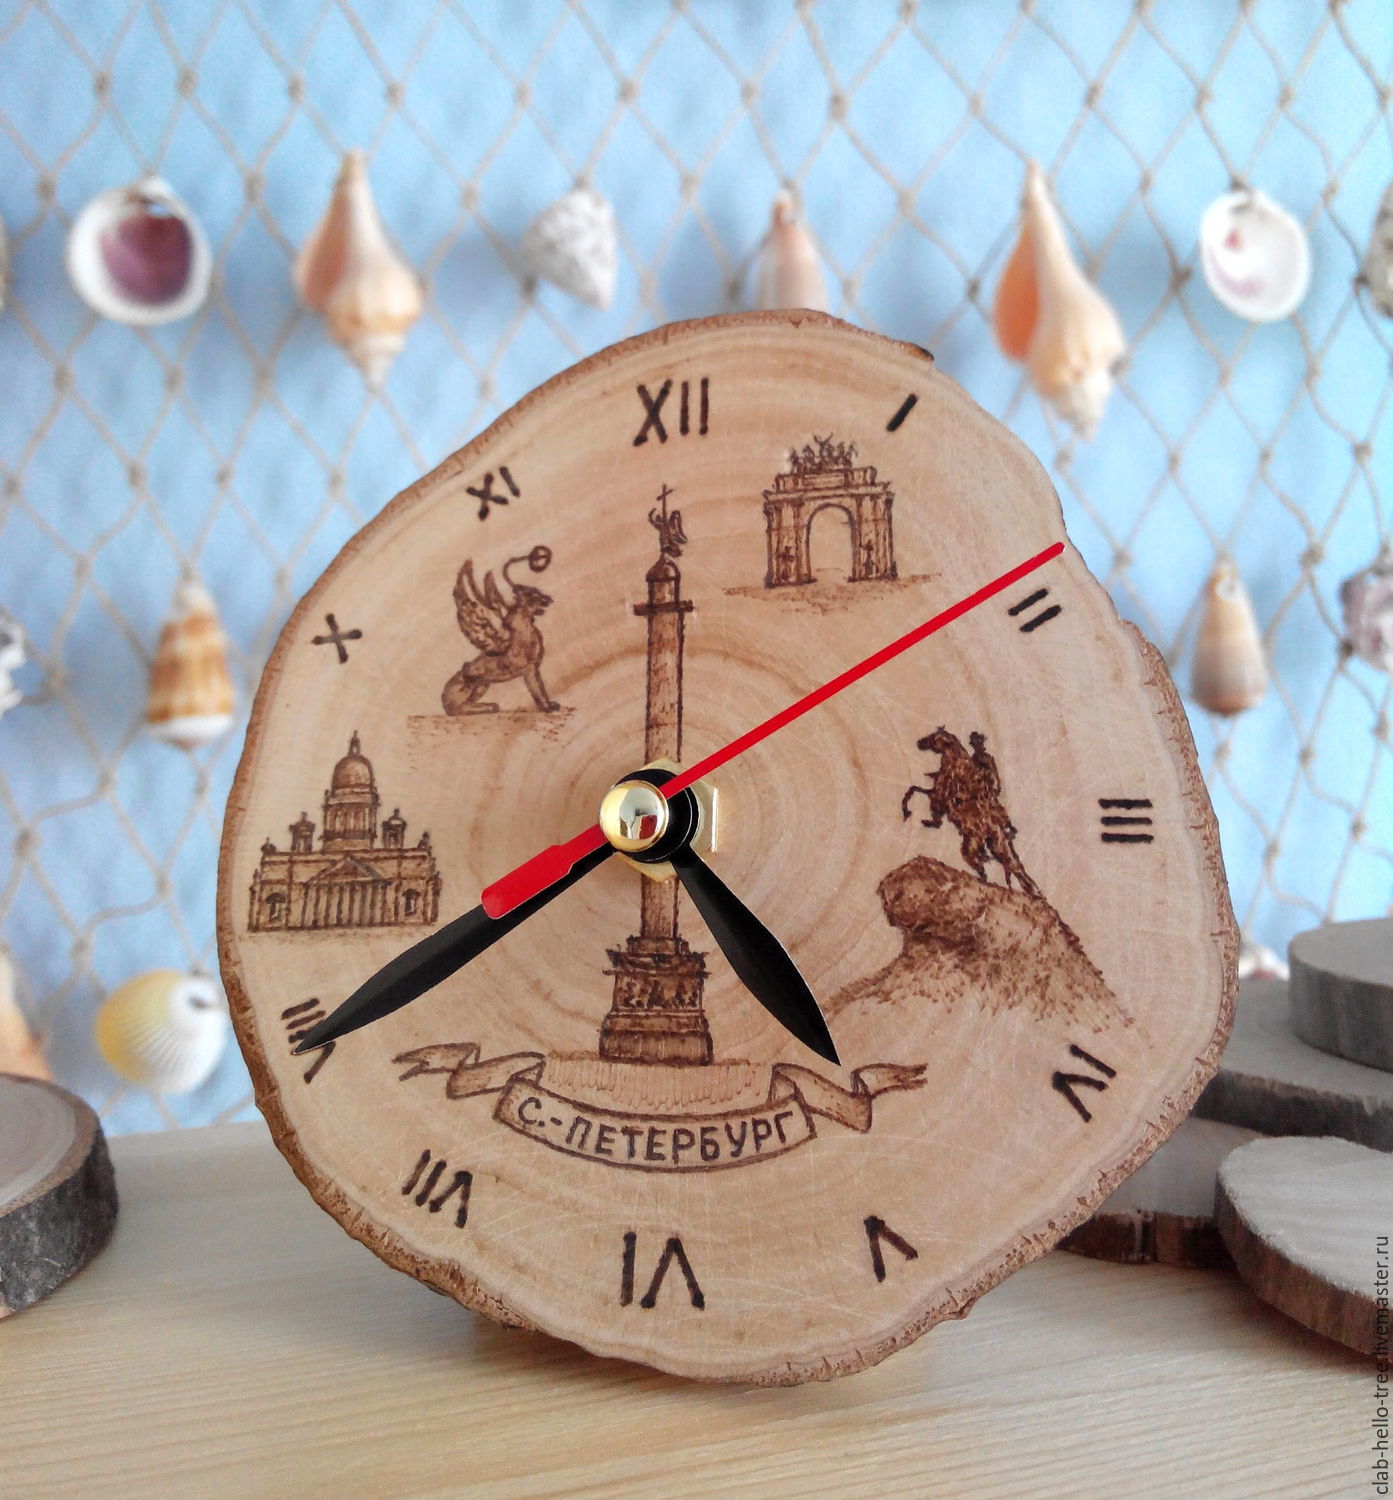 Ручной циферблат. Часы из дерева. Часы сувенирные из дерева. Часы настенные деревянные. Часы из фанеры настенные.